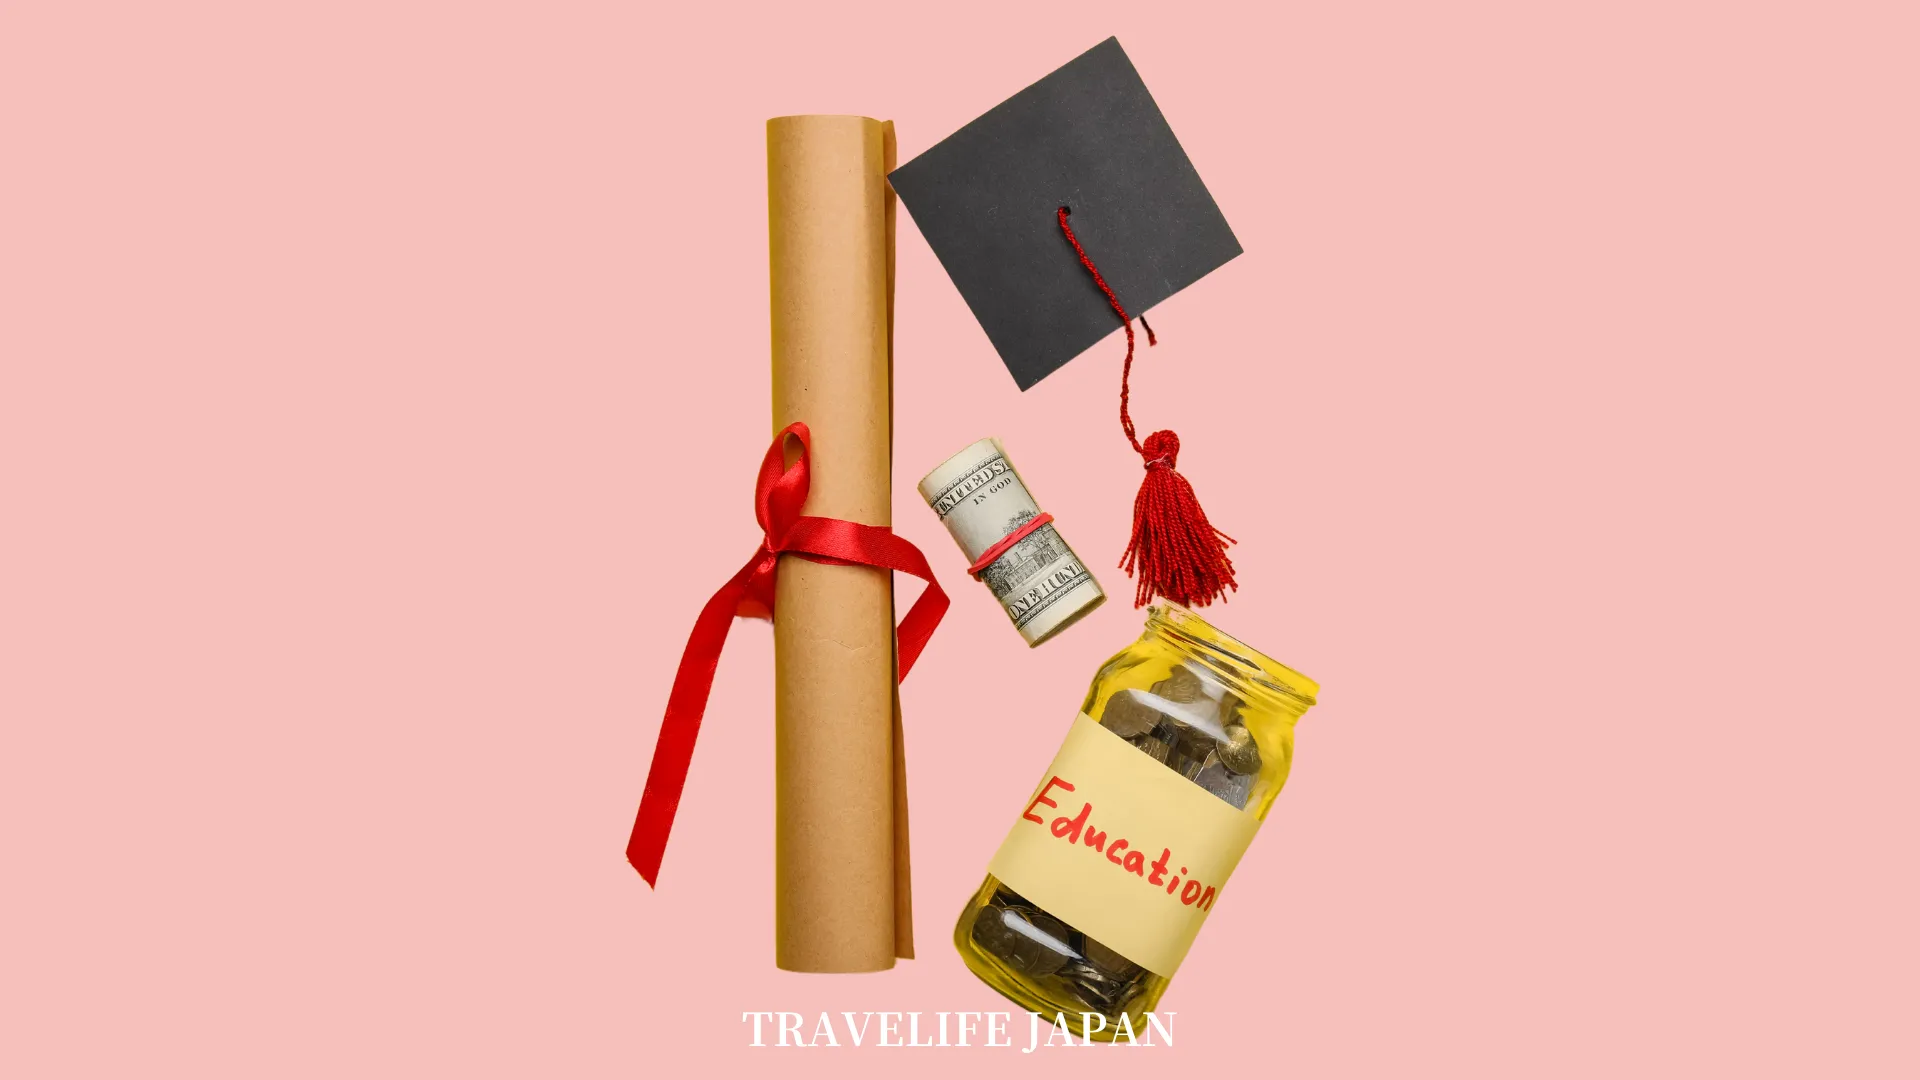 Travelife Japan_Scholarship_1